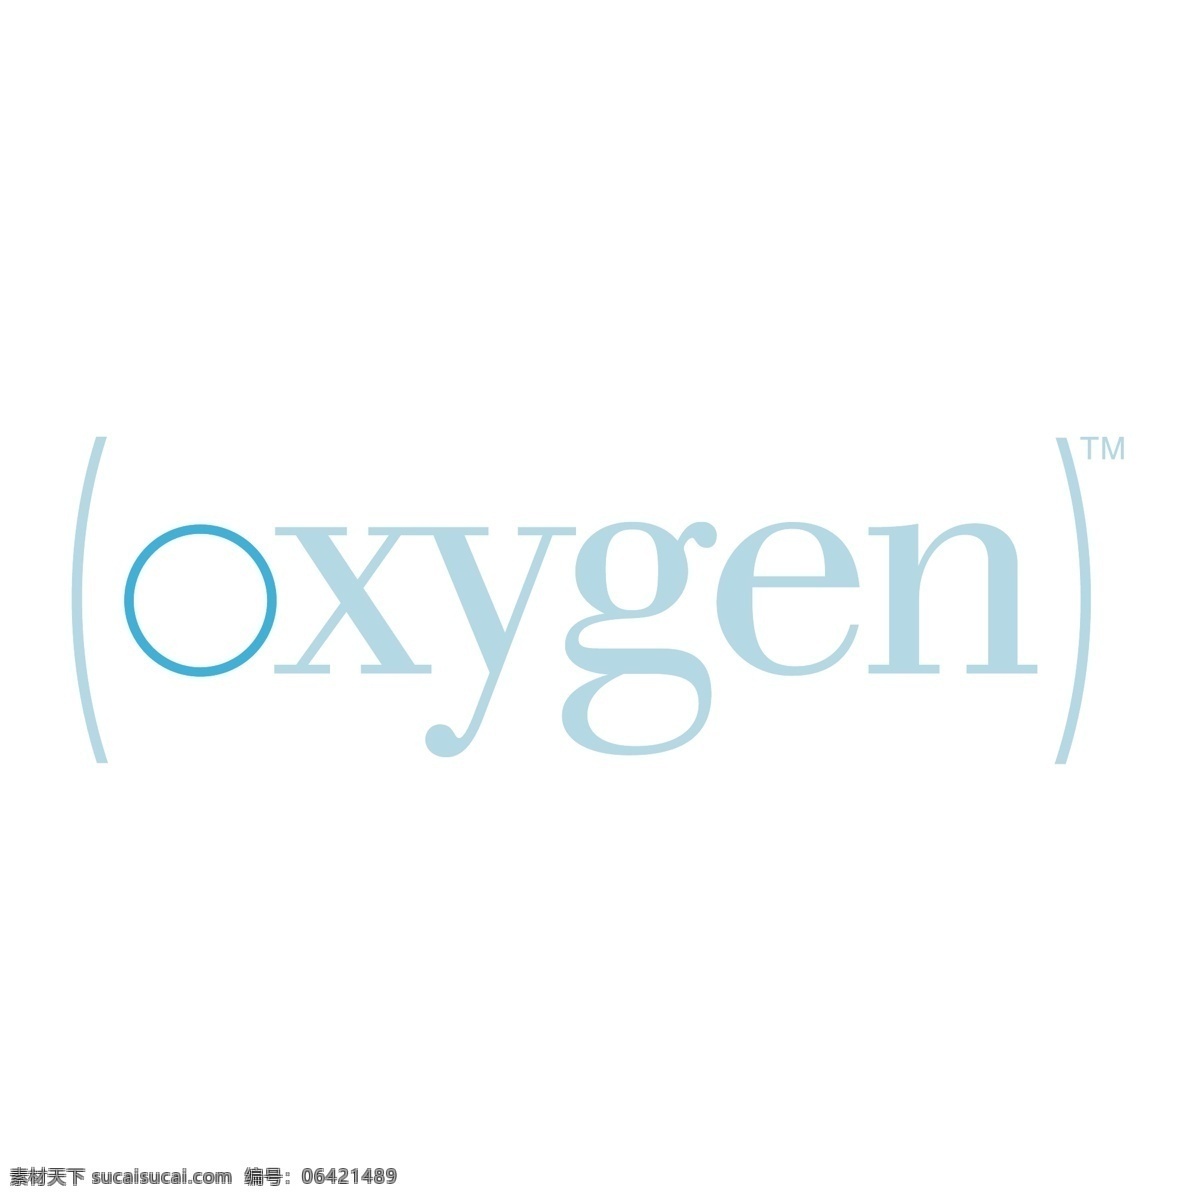 氧气 标识 公司 免费 品牌 品牌标识 商标 矢量标志下载 免费矢量标识 矢量 psd源文件 logo设计